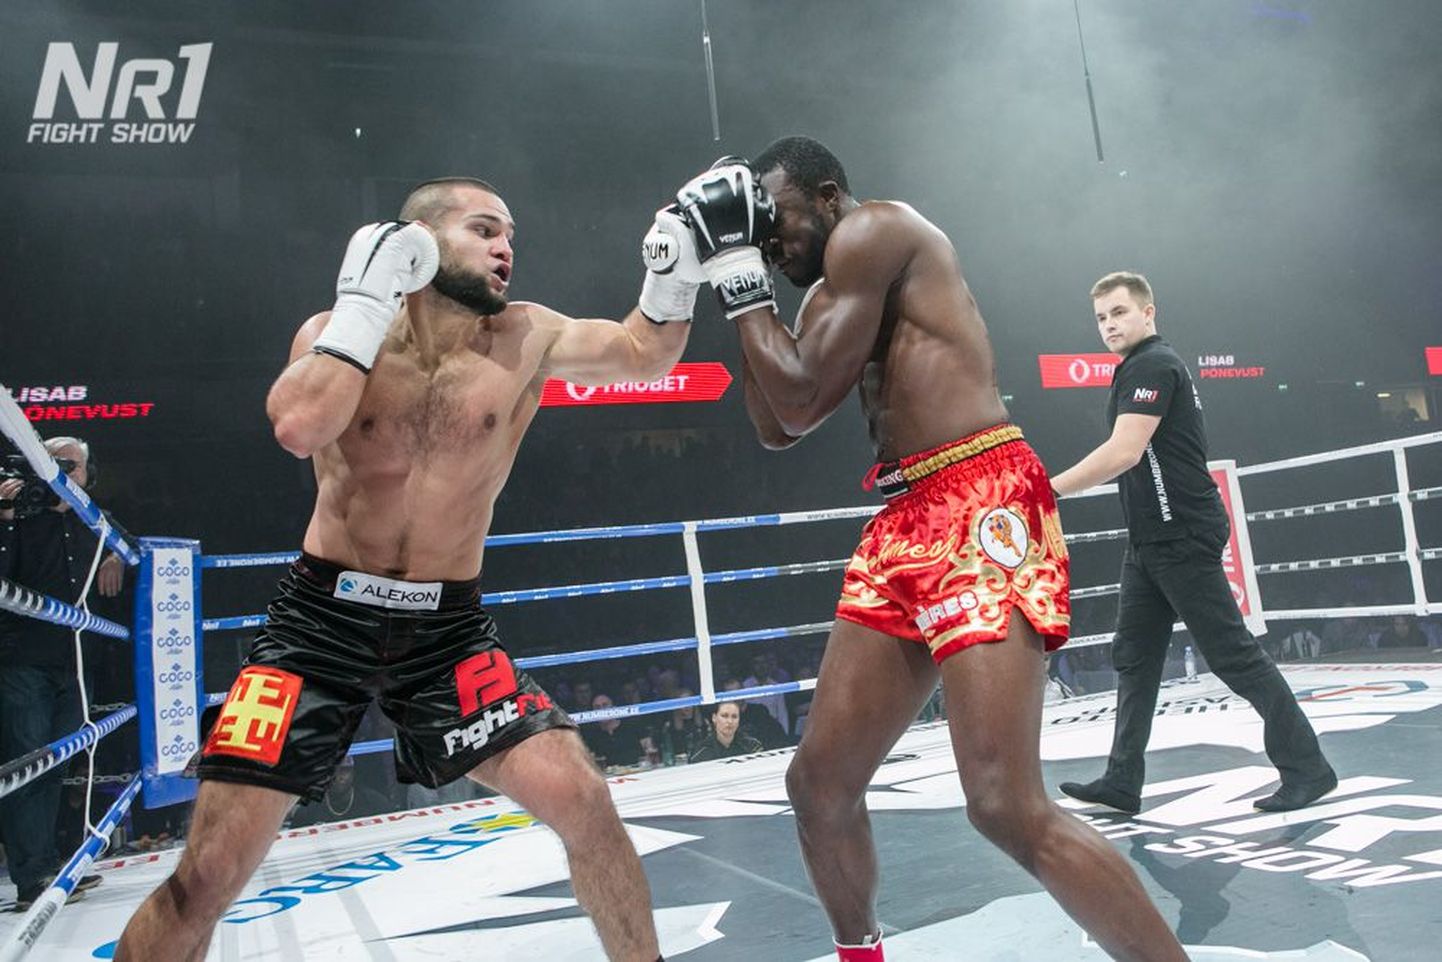 Eelmise aasta lõpus toimunud Number One Fight Show võitlusõhtul näitas Maksim Vorovski (vasakul) taas taset ning nokauteeris neljal korral kikkpoksis maailmameistriks kroonitud Prantsusmaa võitleja Cheick Sidibe.